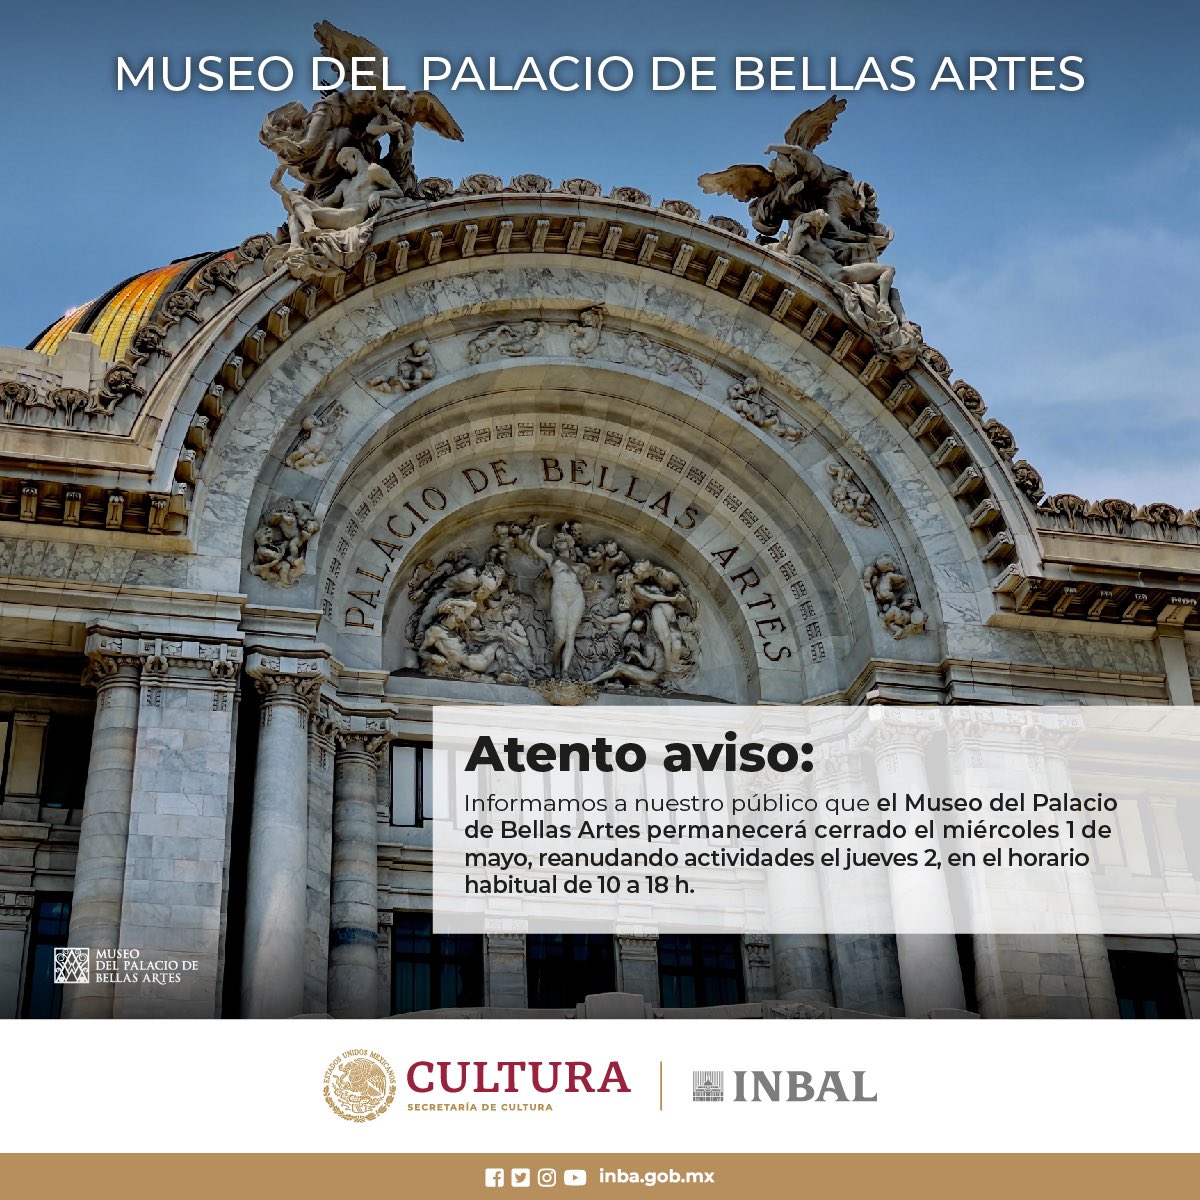 Atento aviso: Informamos a nuestro público que el Museo del Palacio de Bellas Artes permanecerá cerrado el miércoles 1 de mayo, reanudando actividades el jueves 2, en el horario habitual de 10 a 18 h.